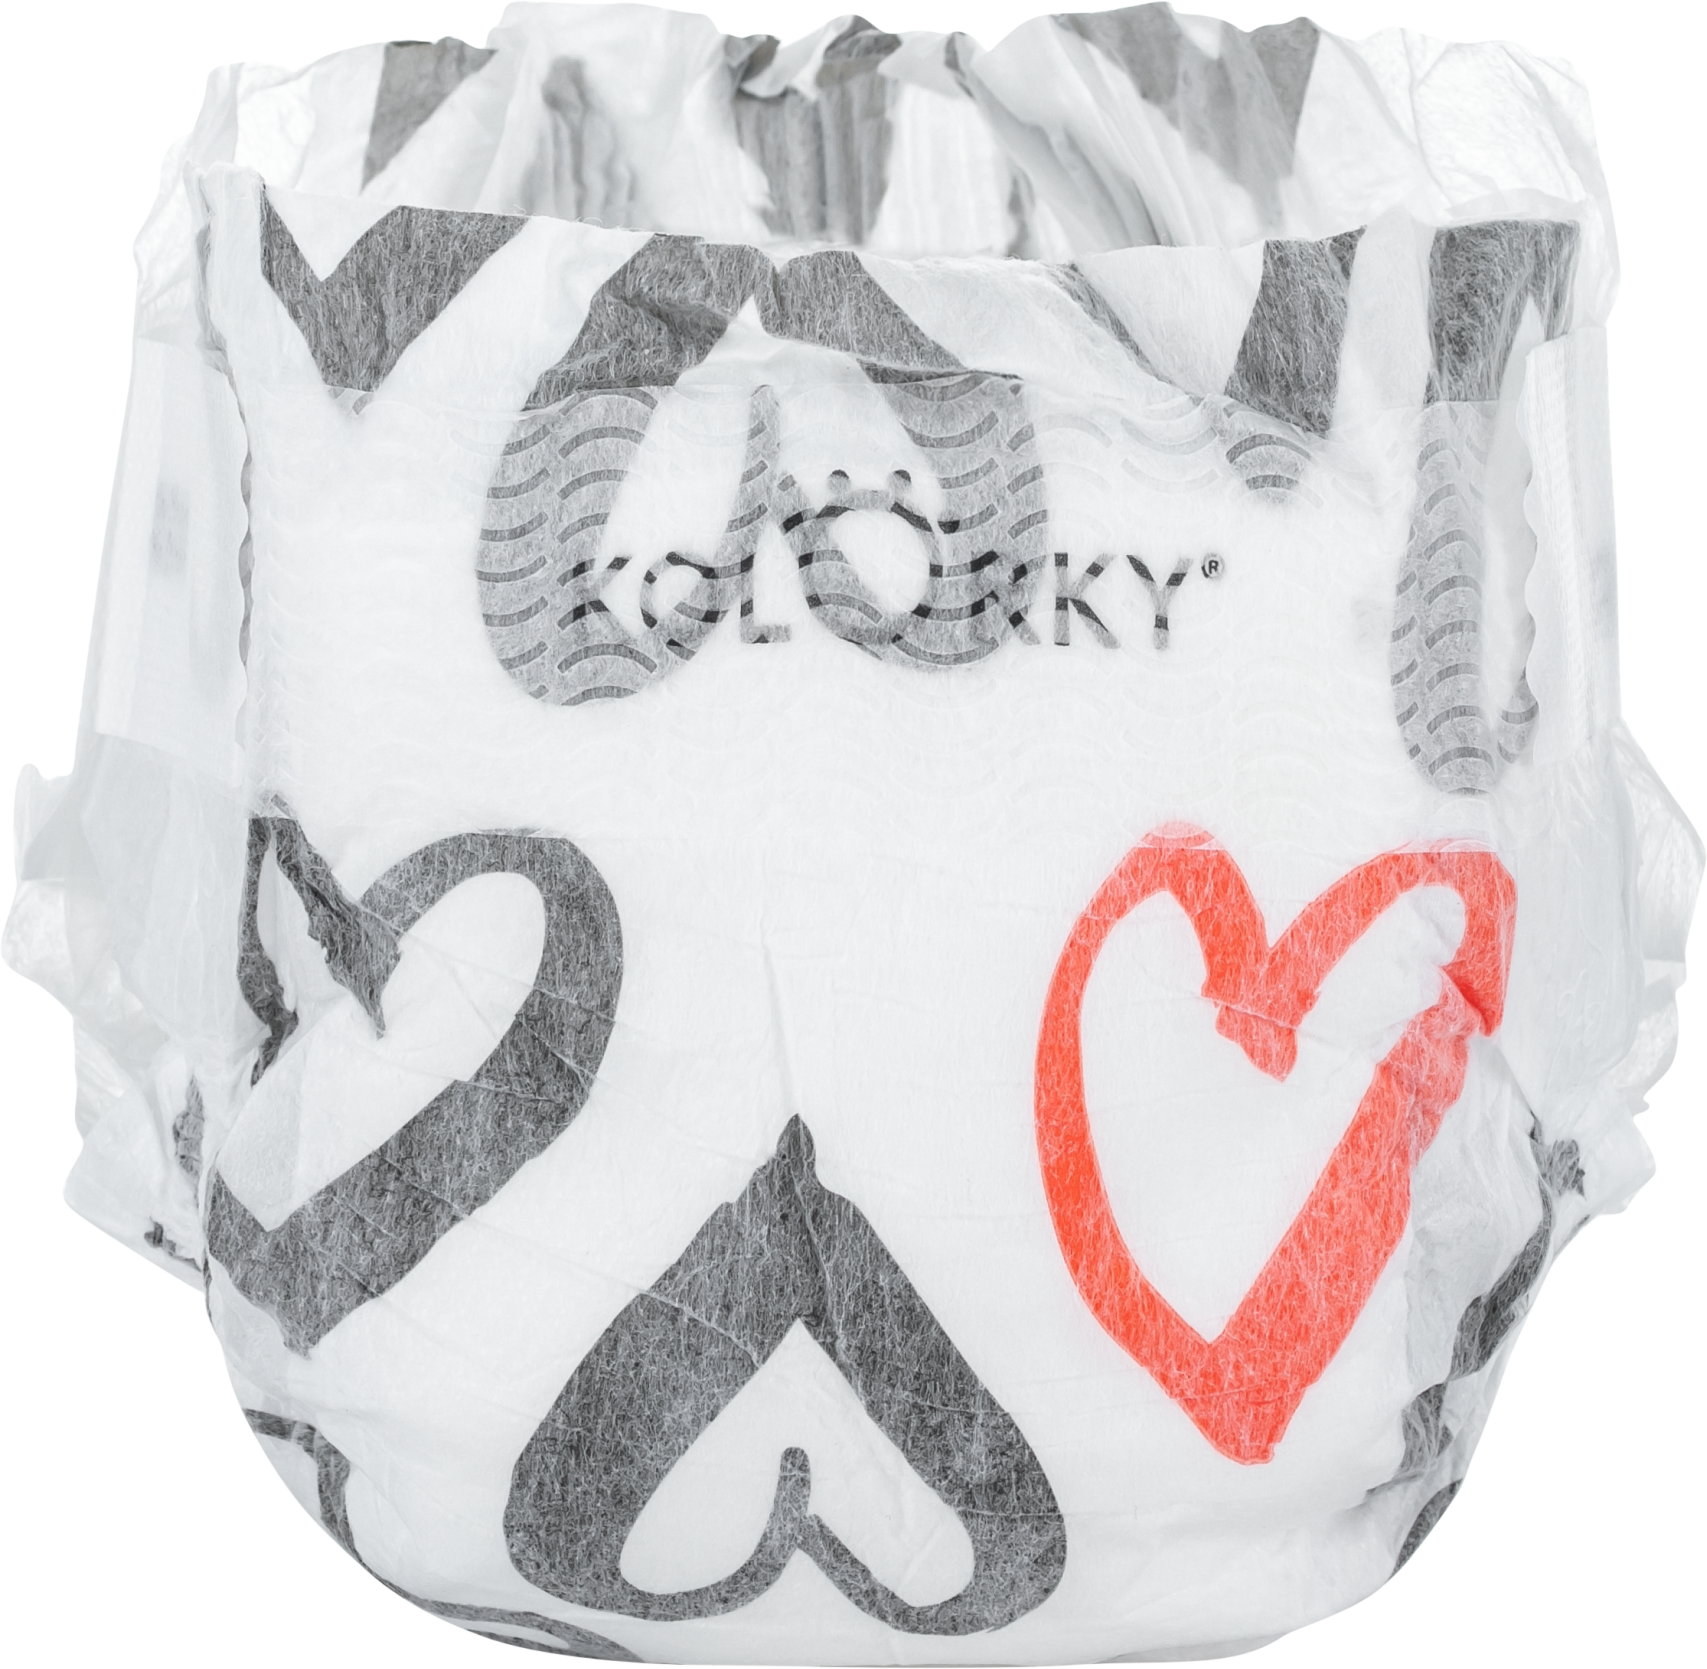 Kolorky Day Hearts S 3-6 kg Einweg-Ökowindel 25 Stk.